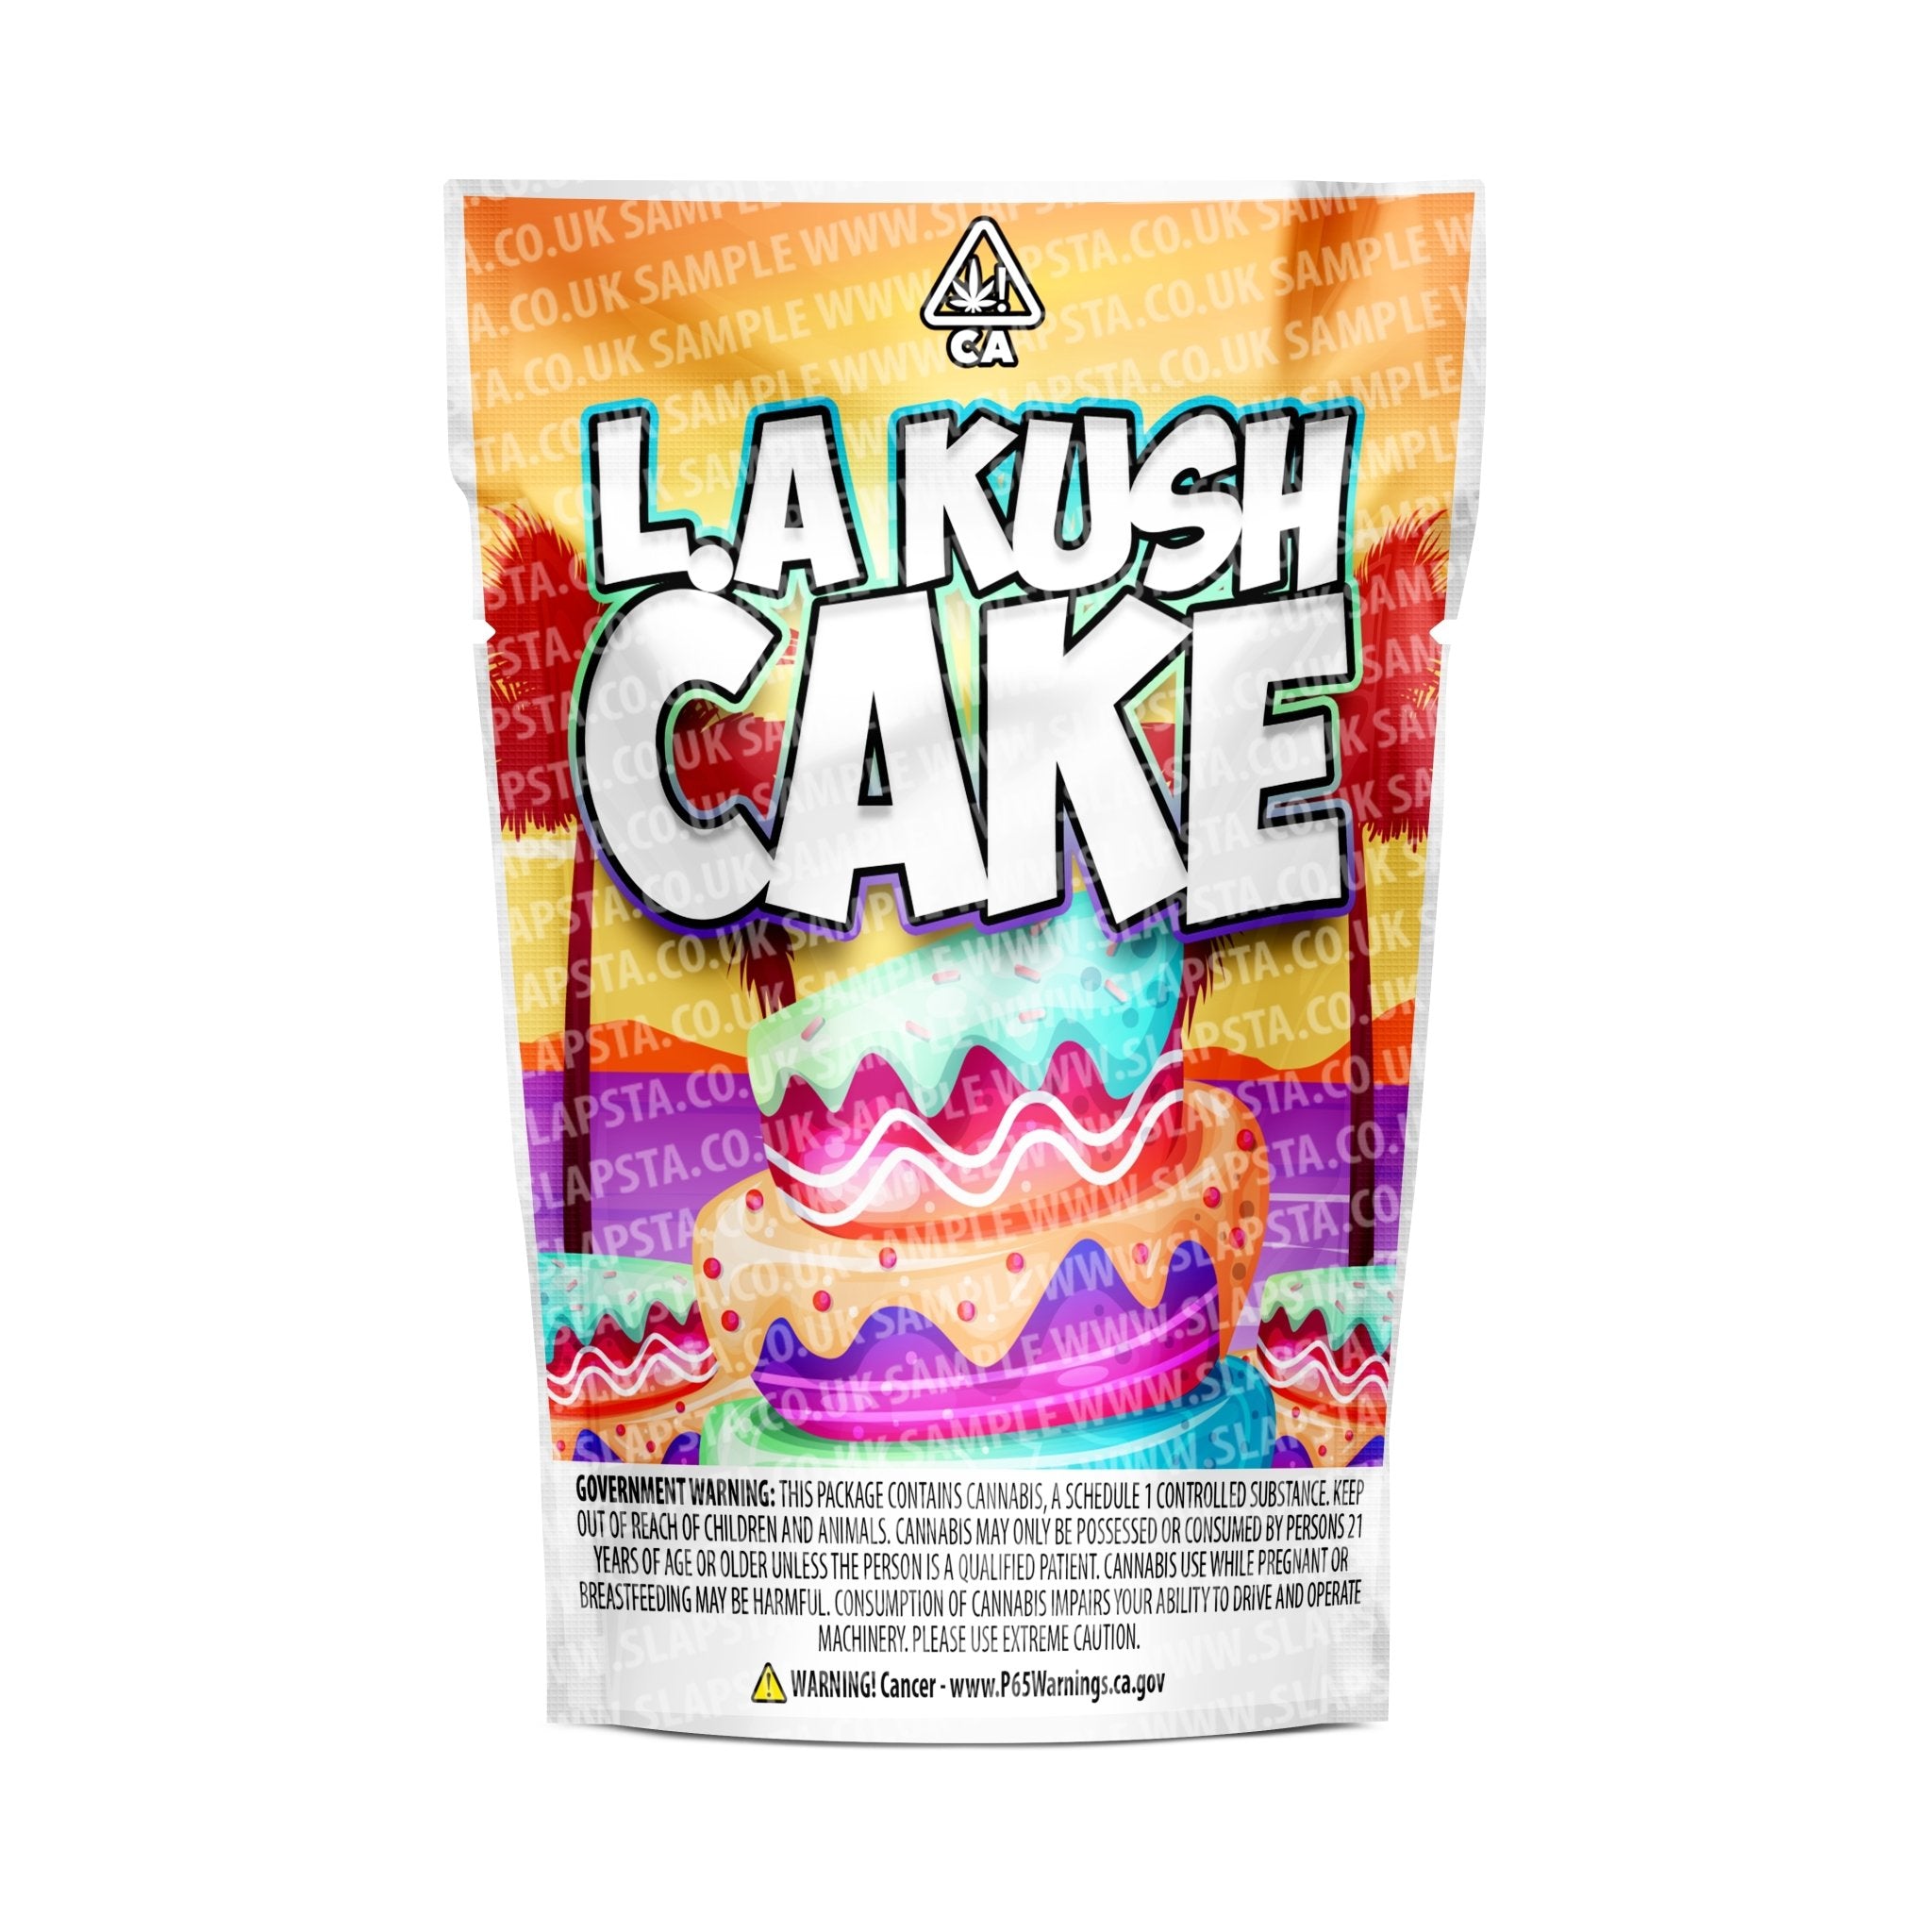 Buy LA Kush Cake Strain Online | La Kush Cake Strain for Sale